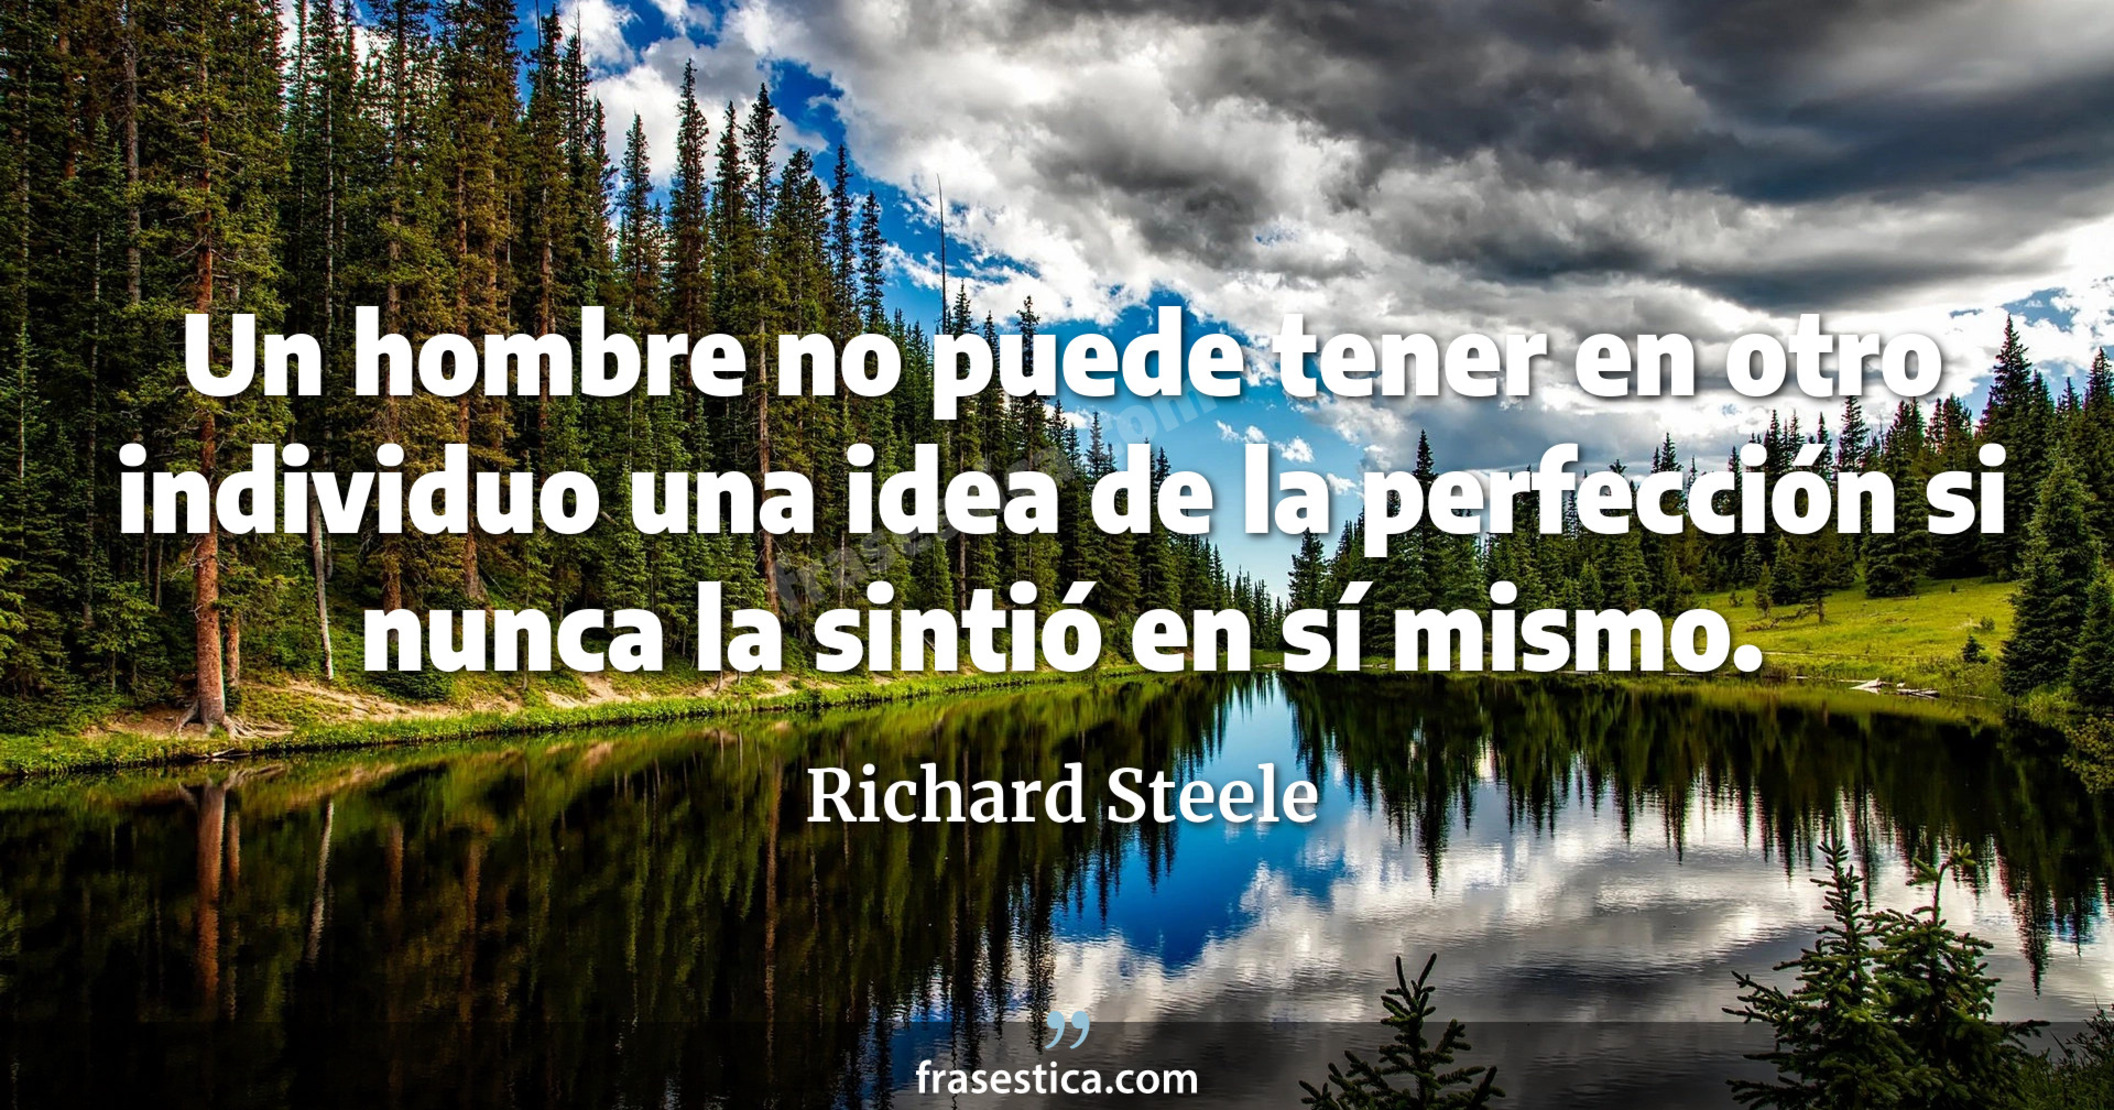 Un hombre no puede tener en otro individuo una idea de la perfección si nunca la sintió en sí mismo. - Richard Steele